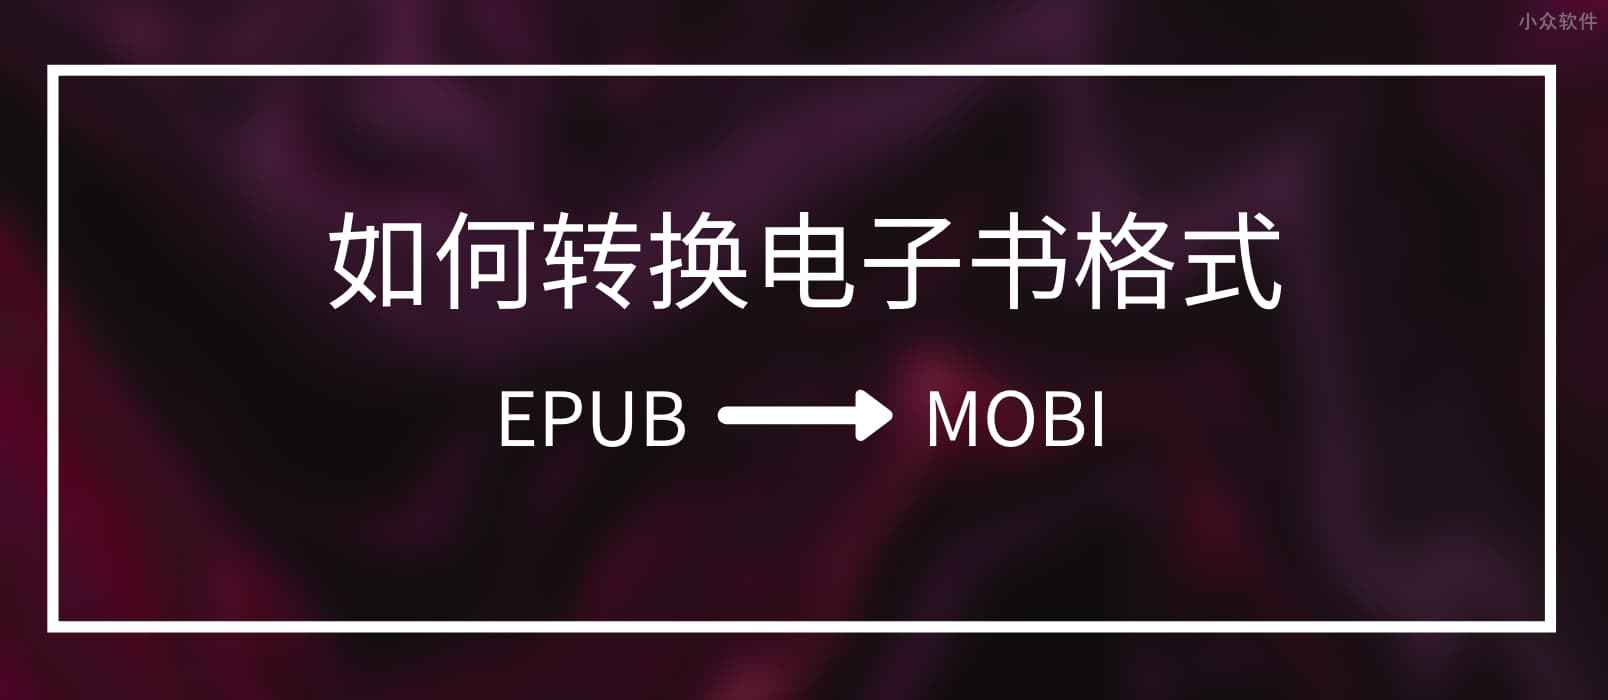 求把 EPUB 转换成 MOBI 的电子书格式转换工具